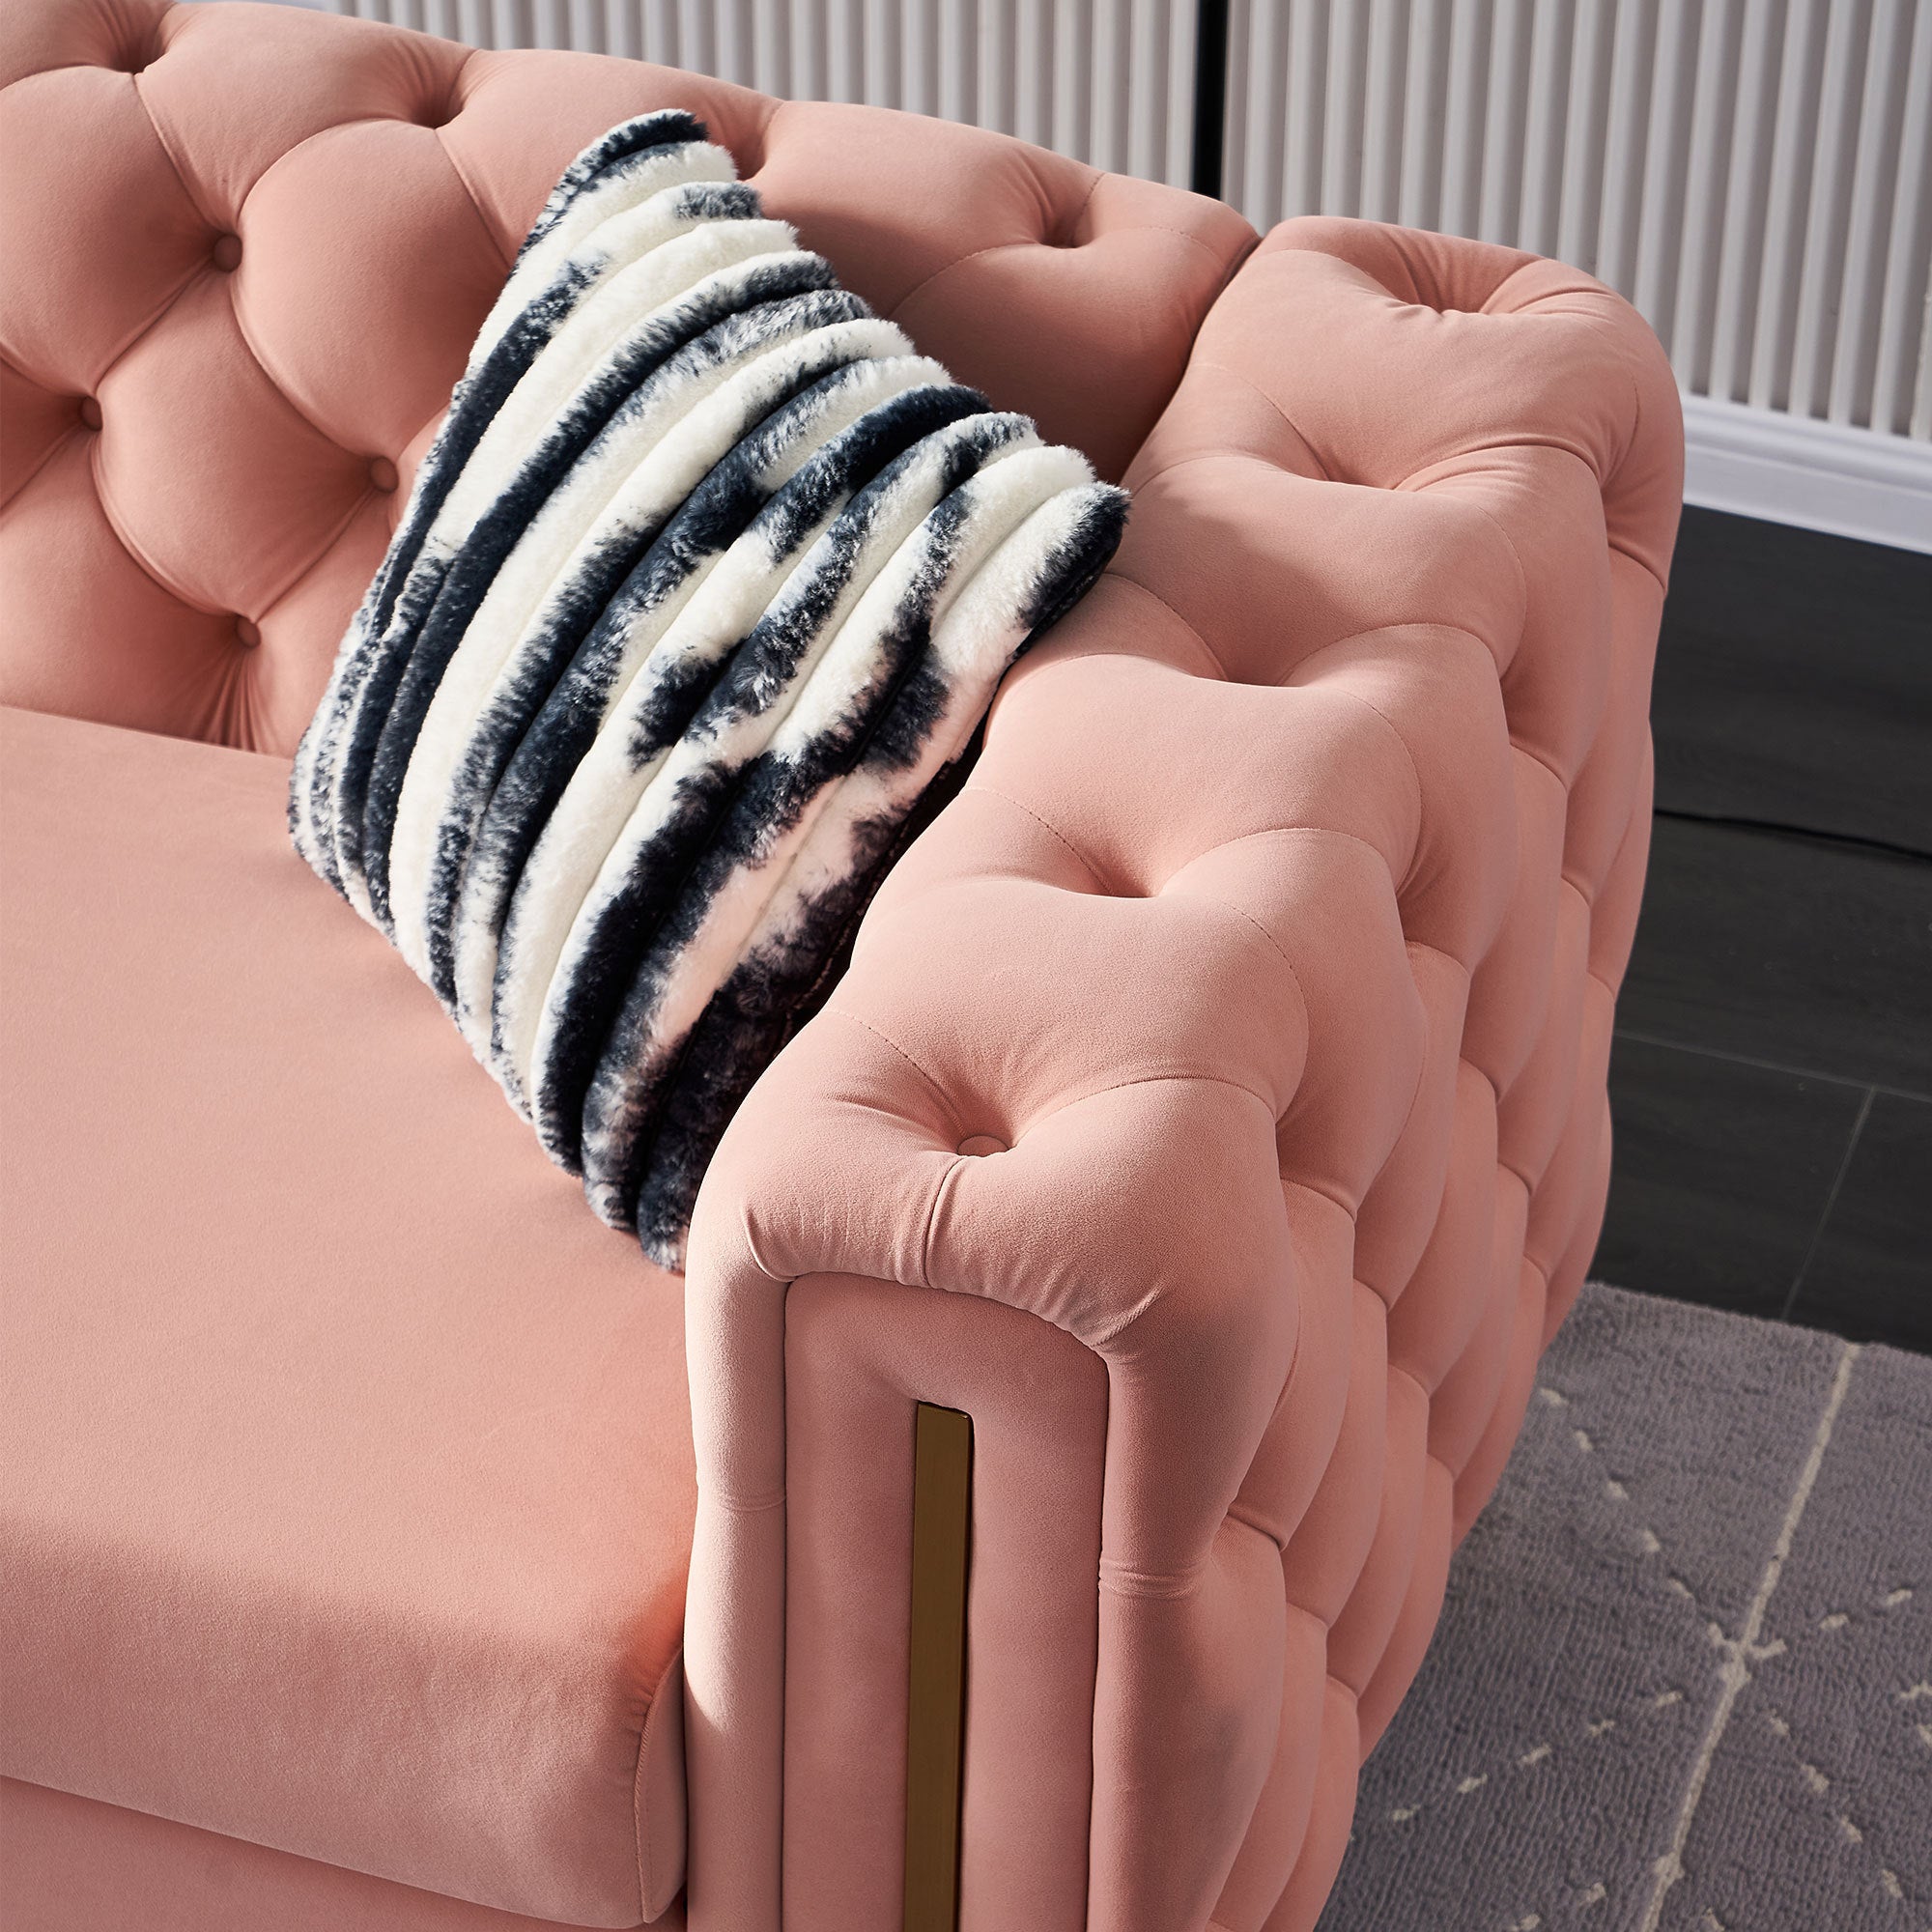 Giodani 84" Modern Pink Velvet Sofa